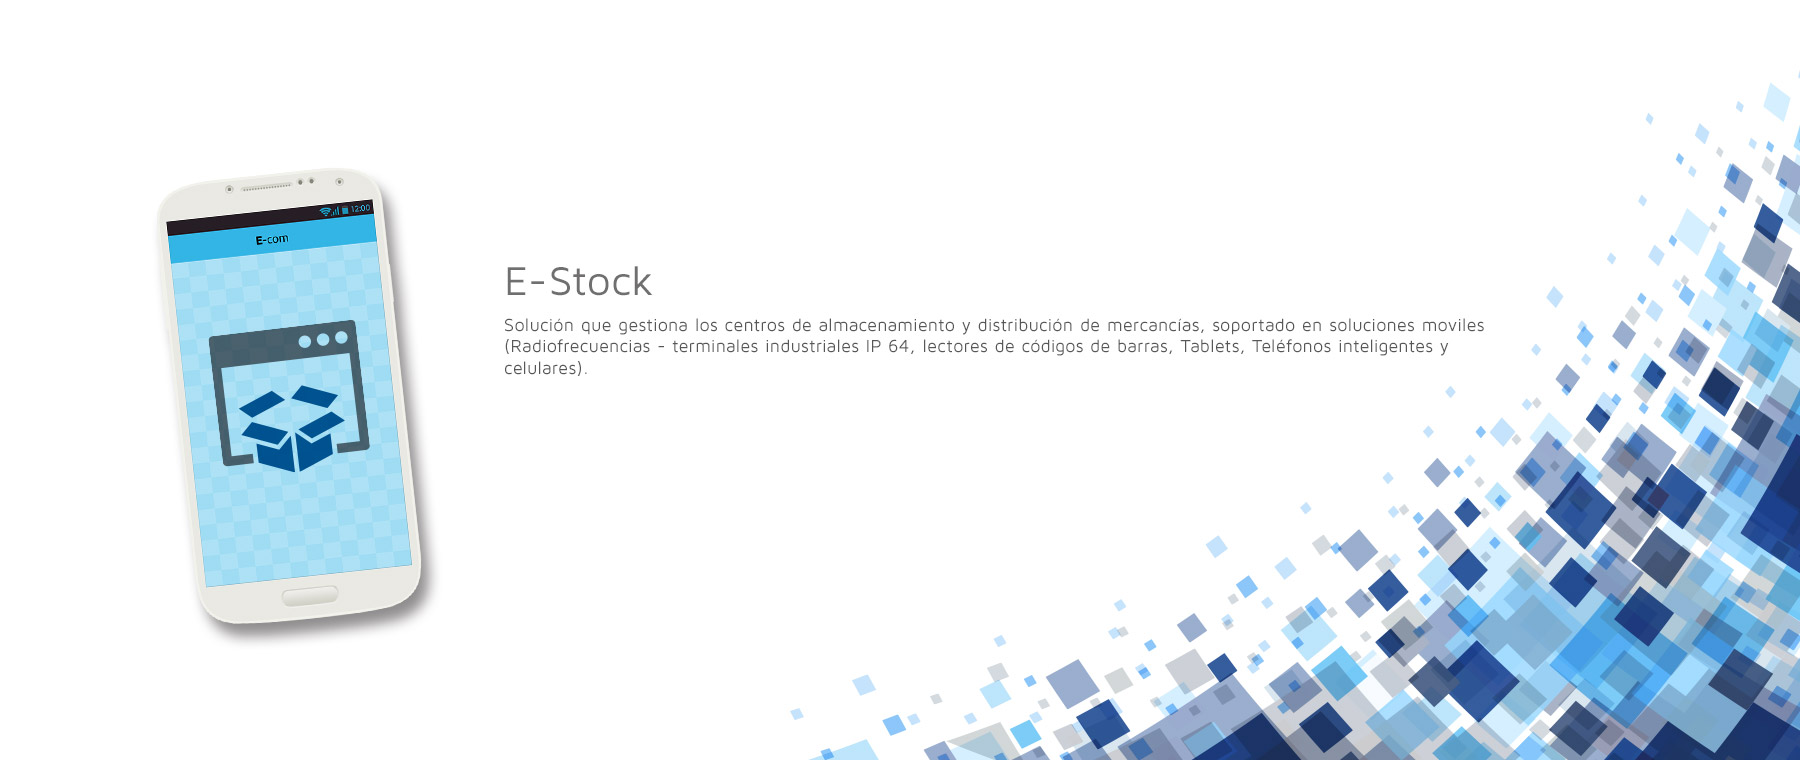 E-Stock